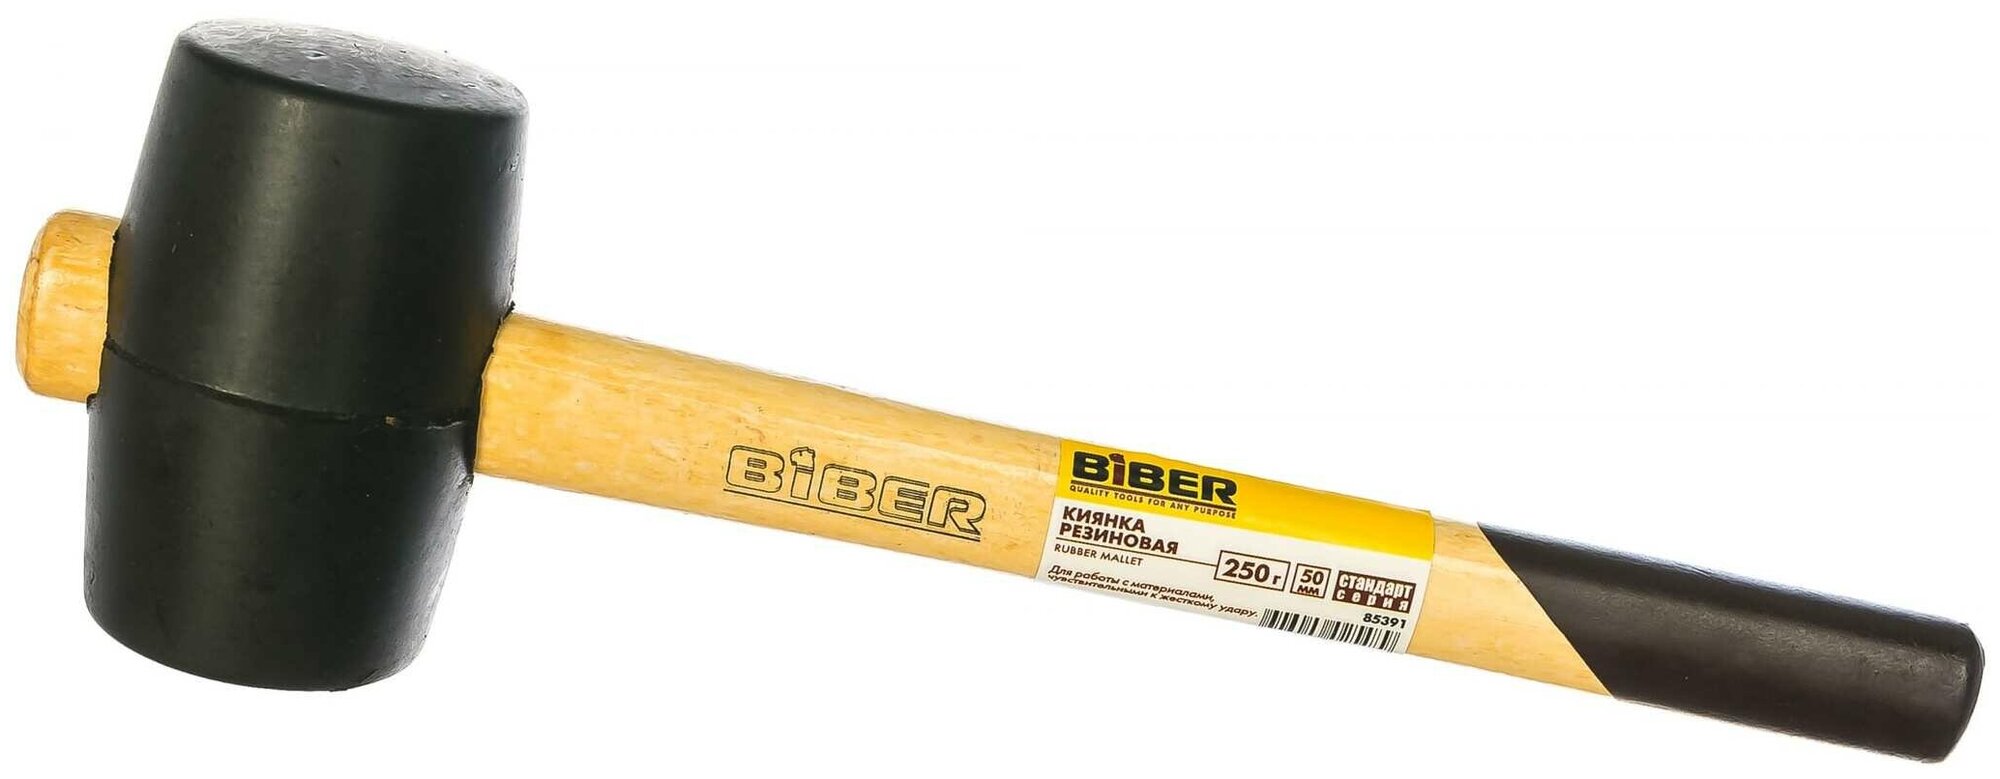 Бибер Киянка с деревянной ручкой 45мм 025кг Бибер 85391